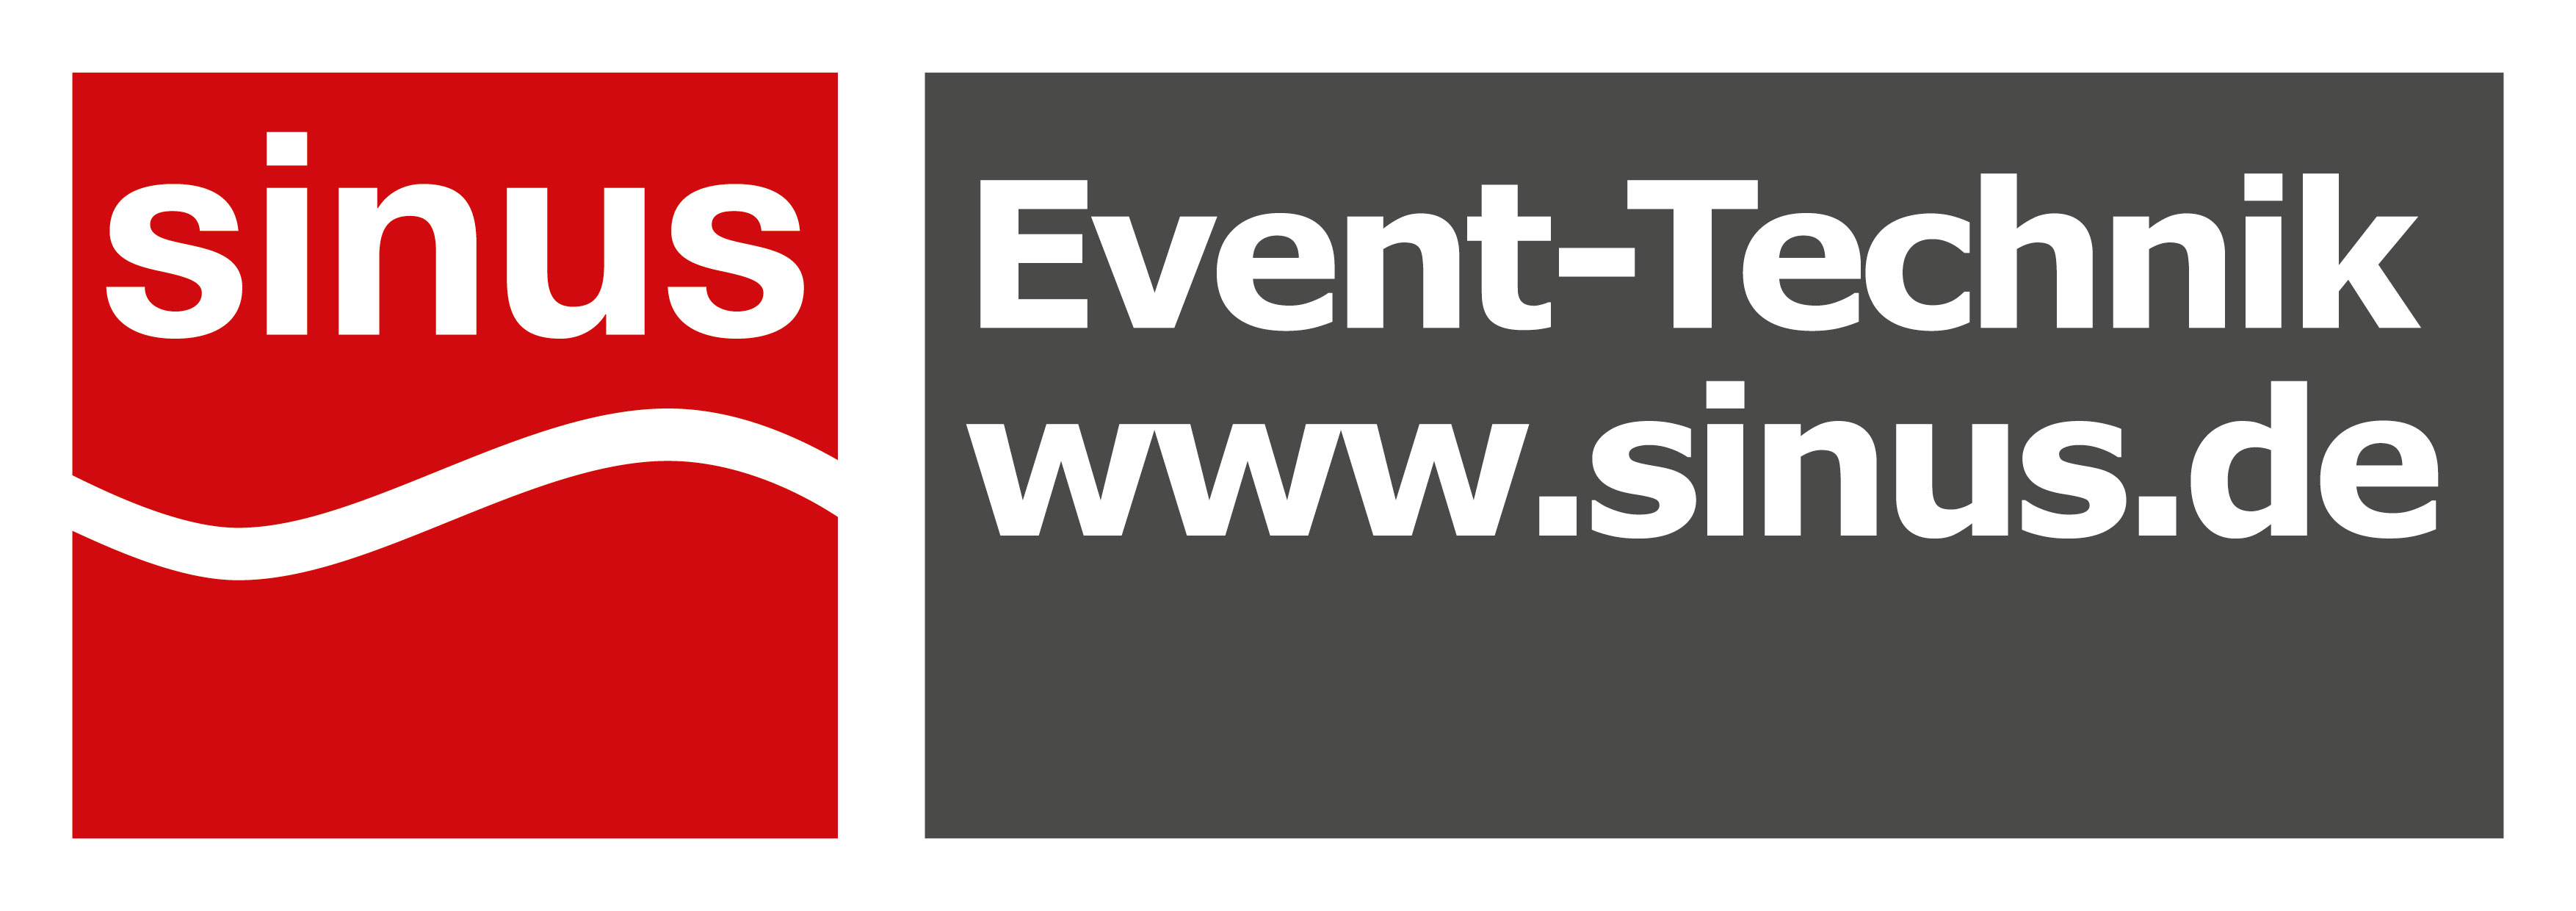 eventlocations-frankurt-sinus-dienstleister-technik-event-location-beleuchtung-logo